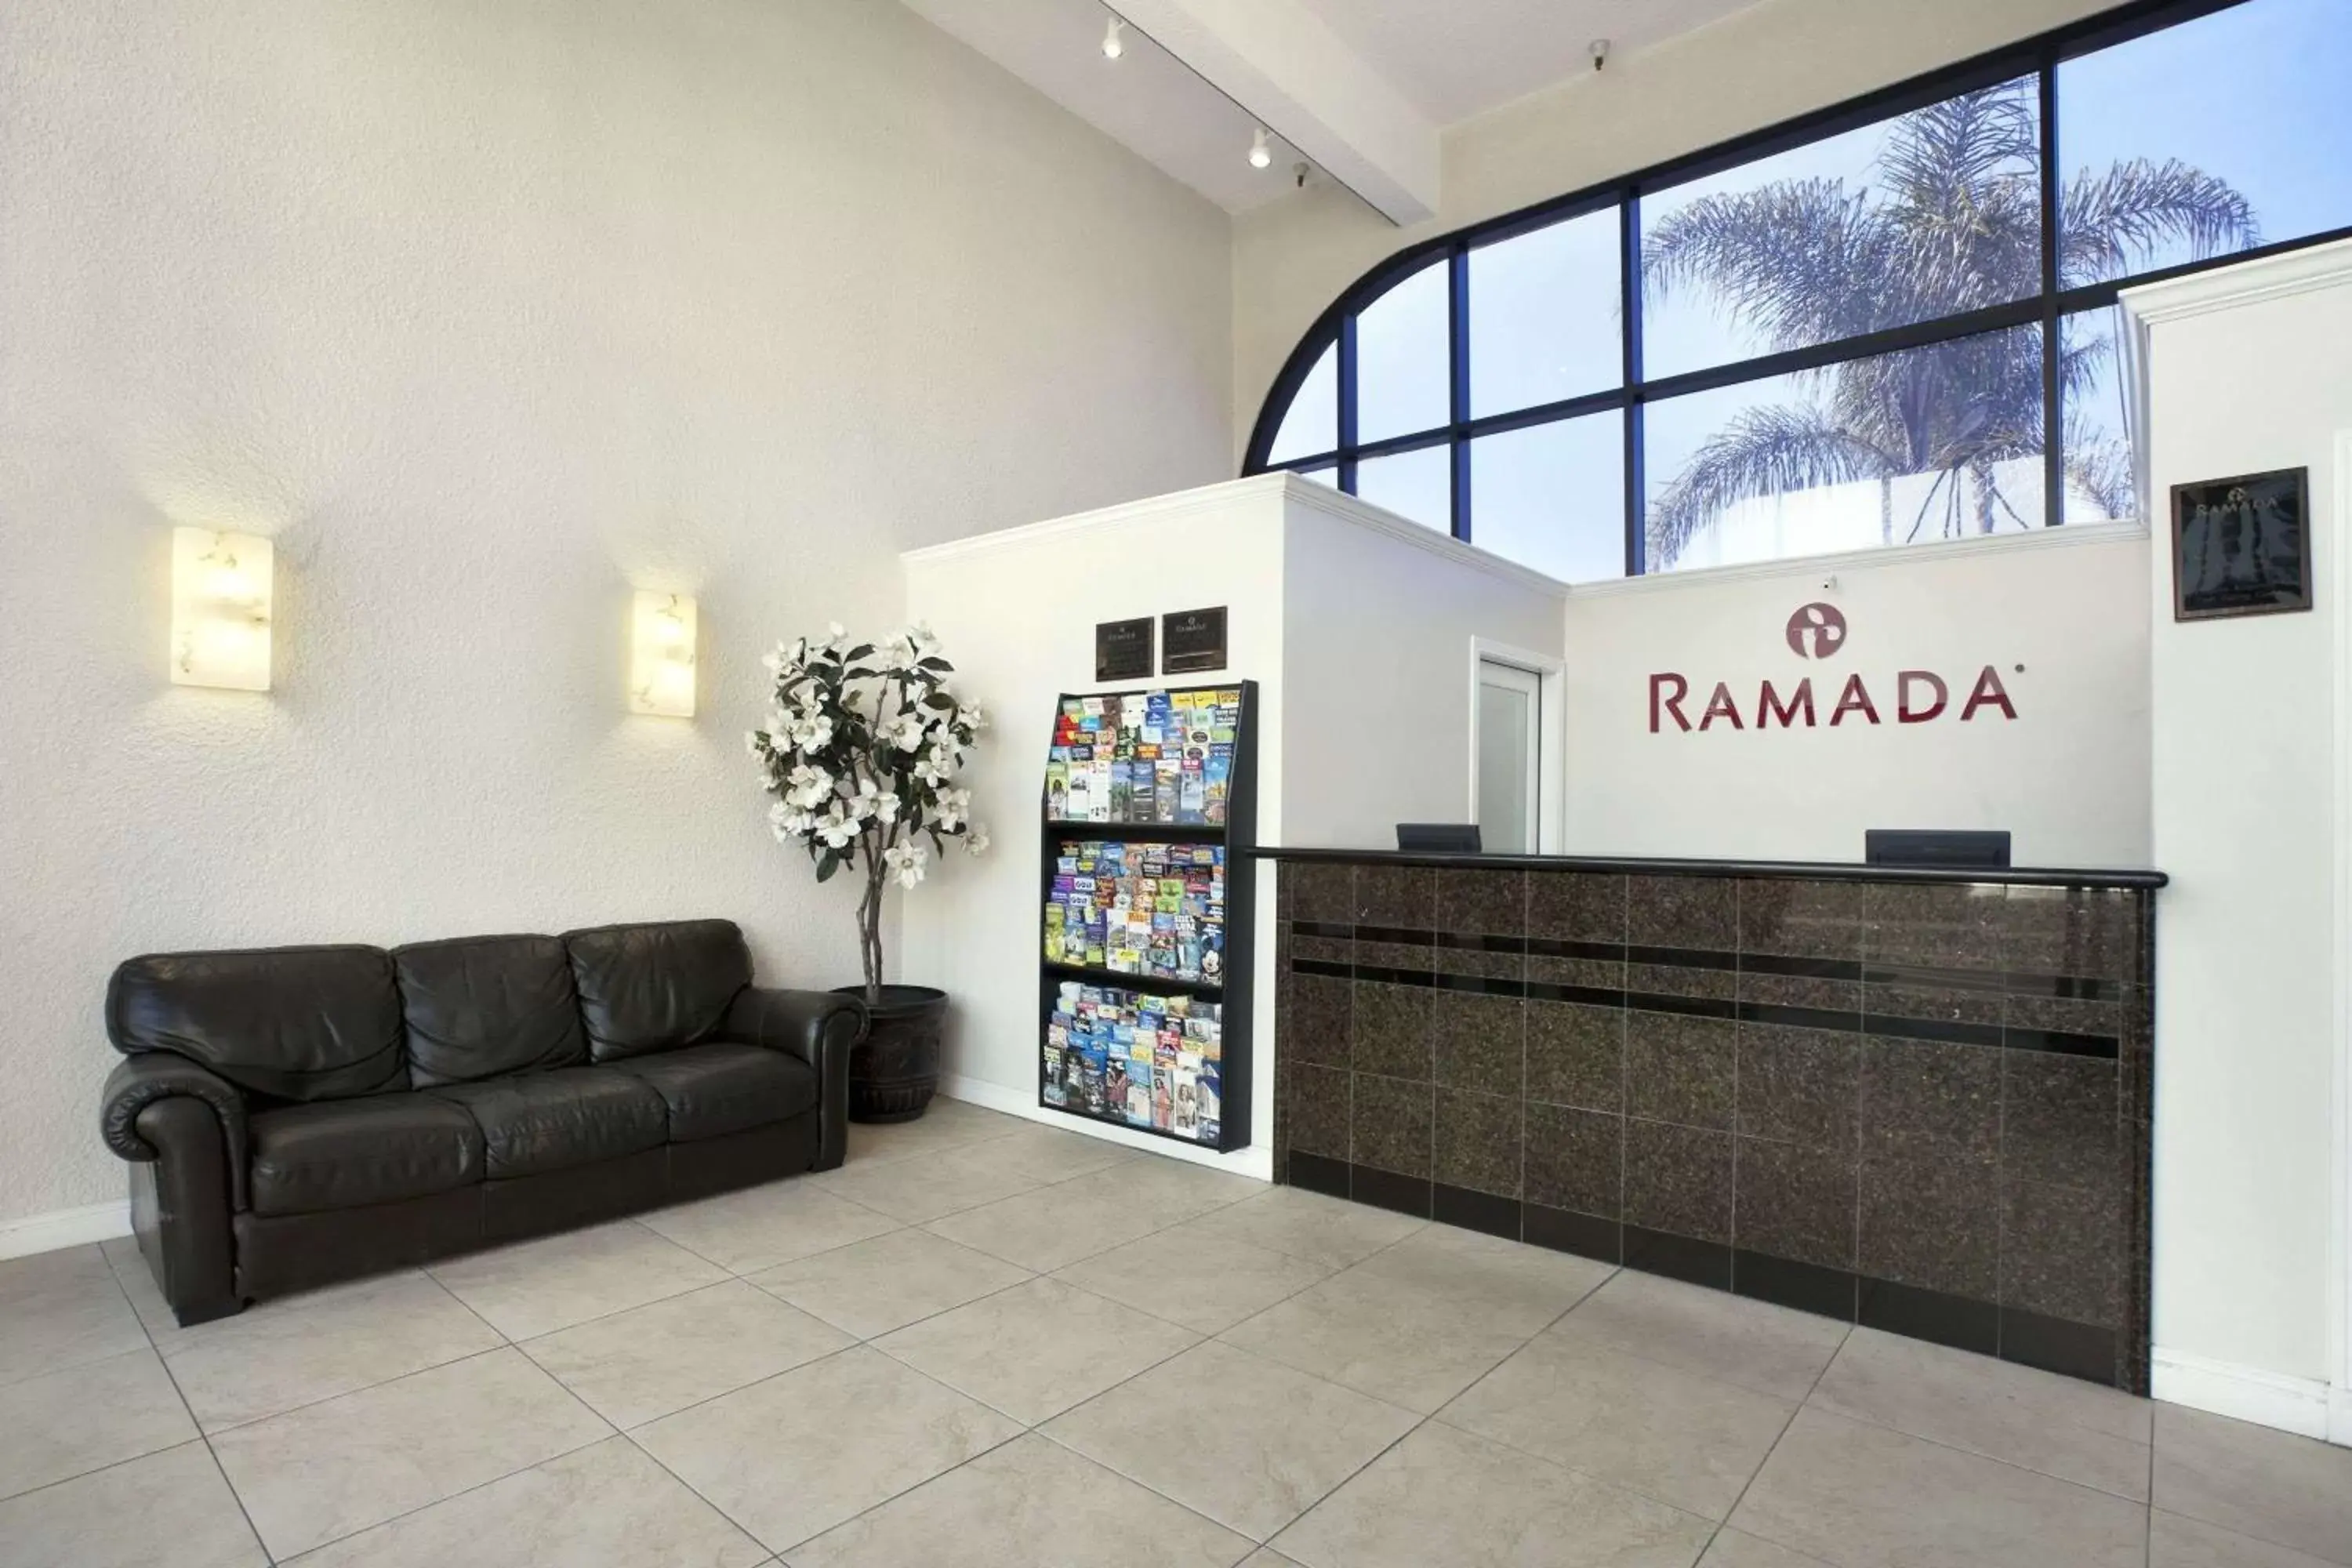 Lobby or reception, Lobby/Reception in Ramada by Wyndham Oceanside